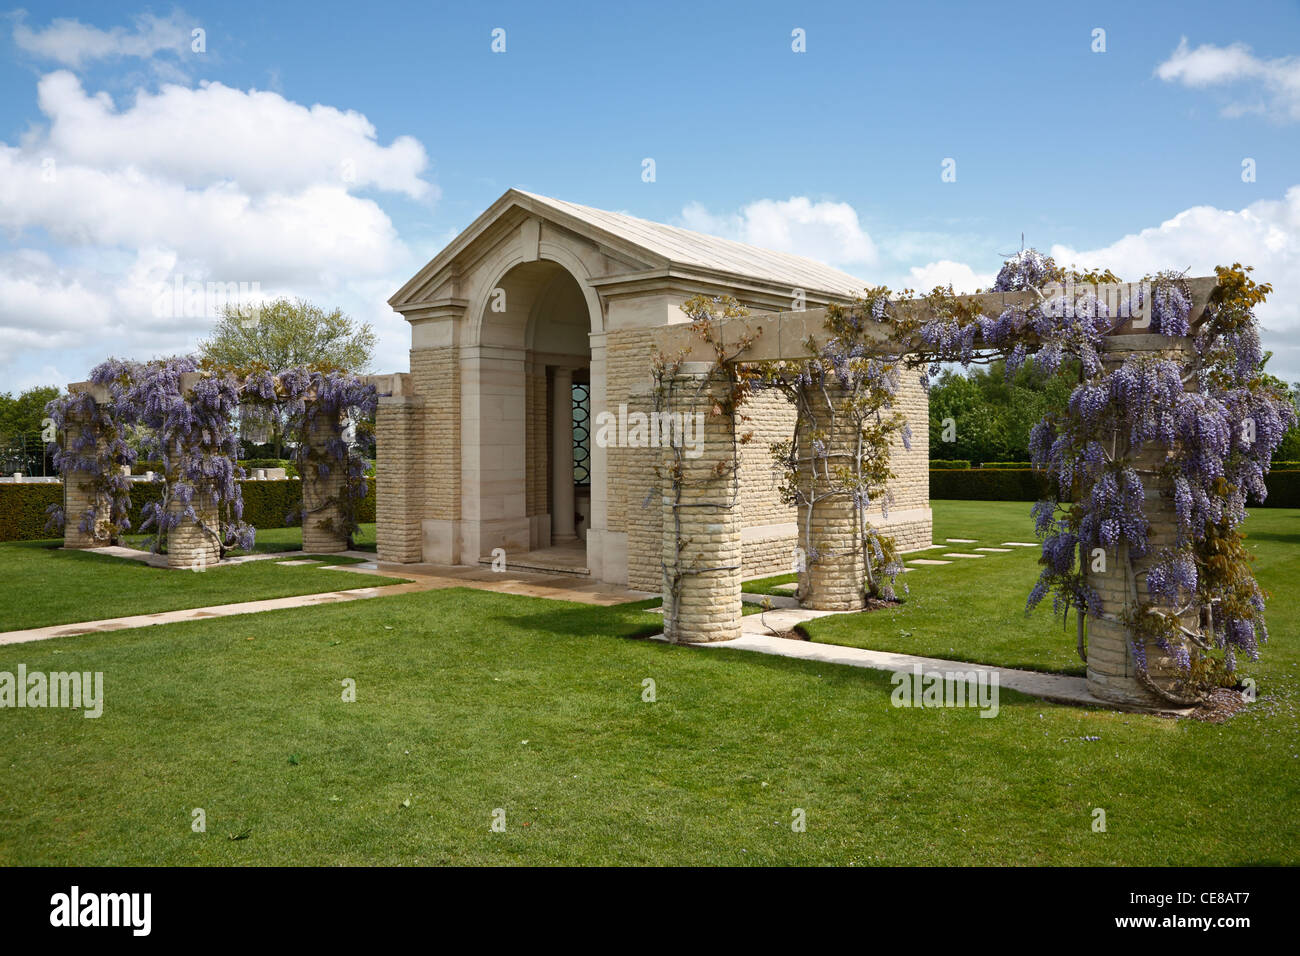 Le cimetière de guerre de Bayeux, chapelle du souvenir - le cimetière de guerre britannique à Bayeux, Normandie, France. Matin d'été de la glycine en fleurs Banque D'Images